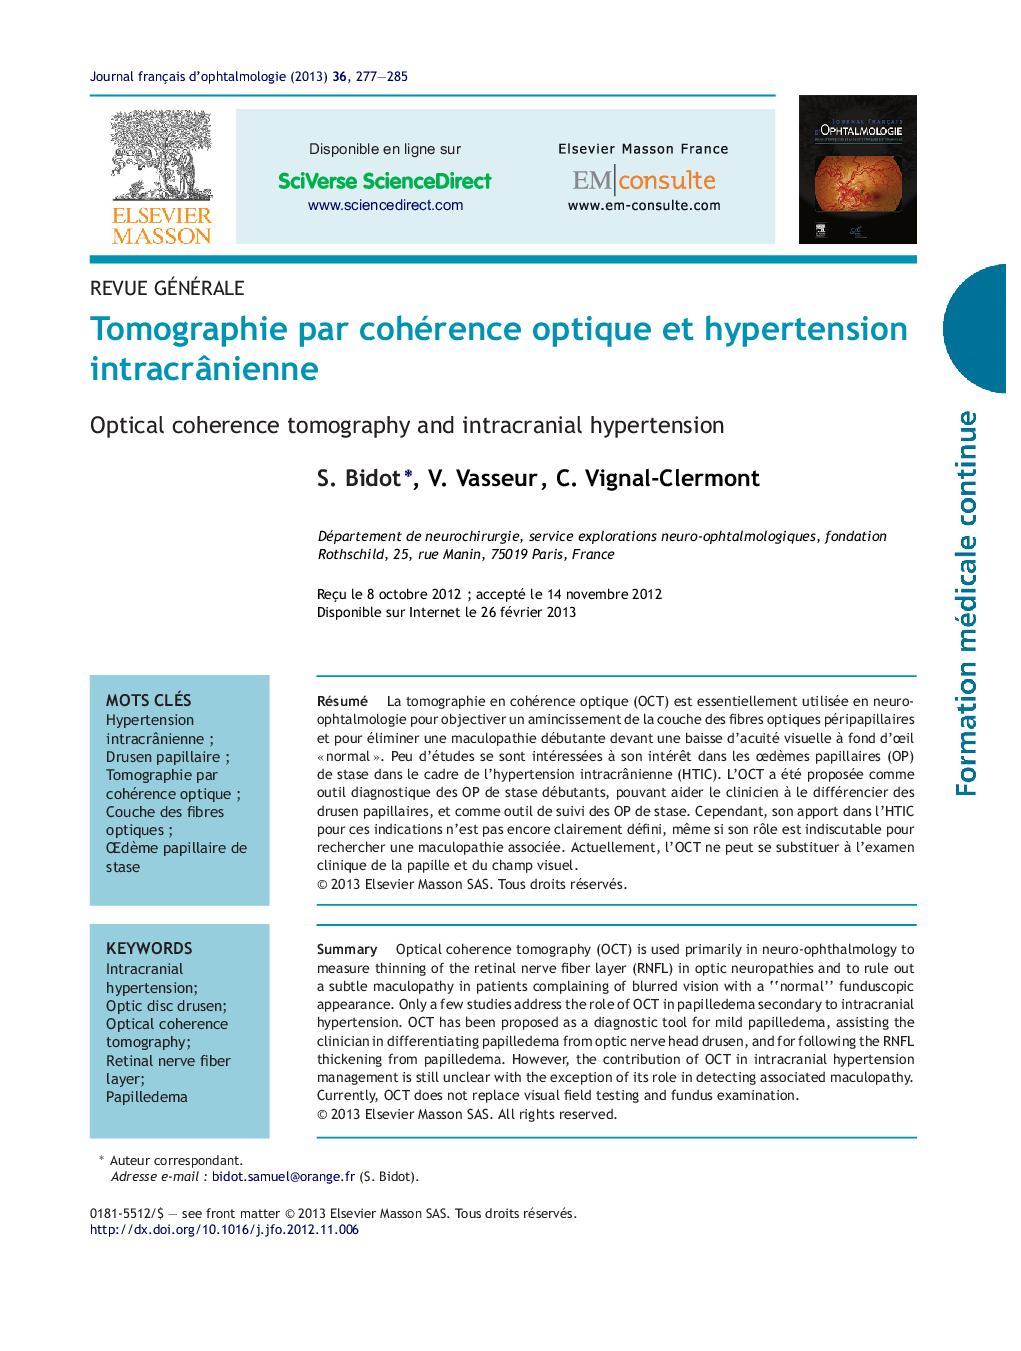 Tomographie par cohérence optique et hypertension intracrÃ¢nienne